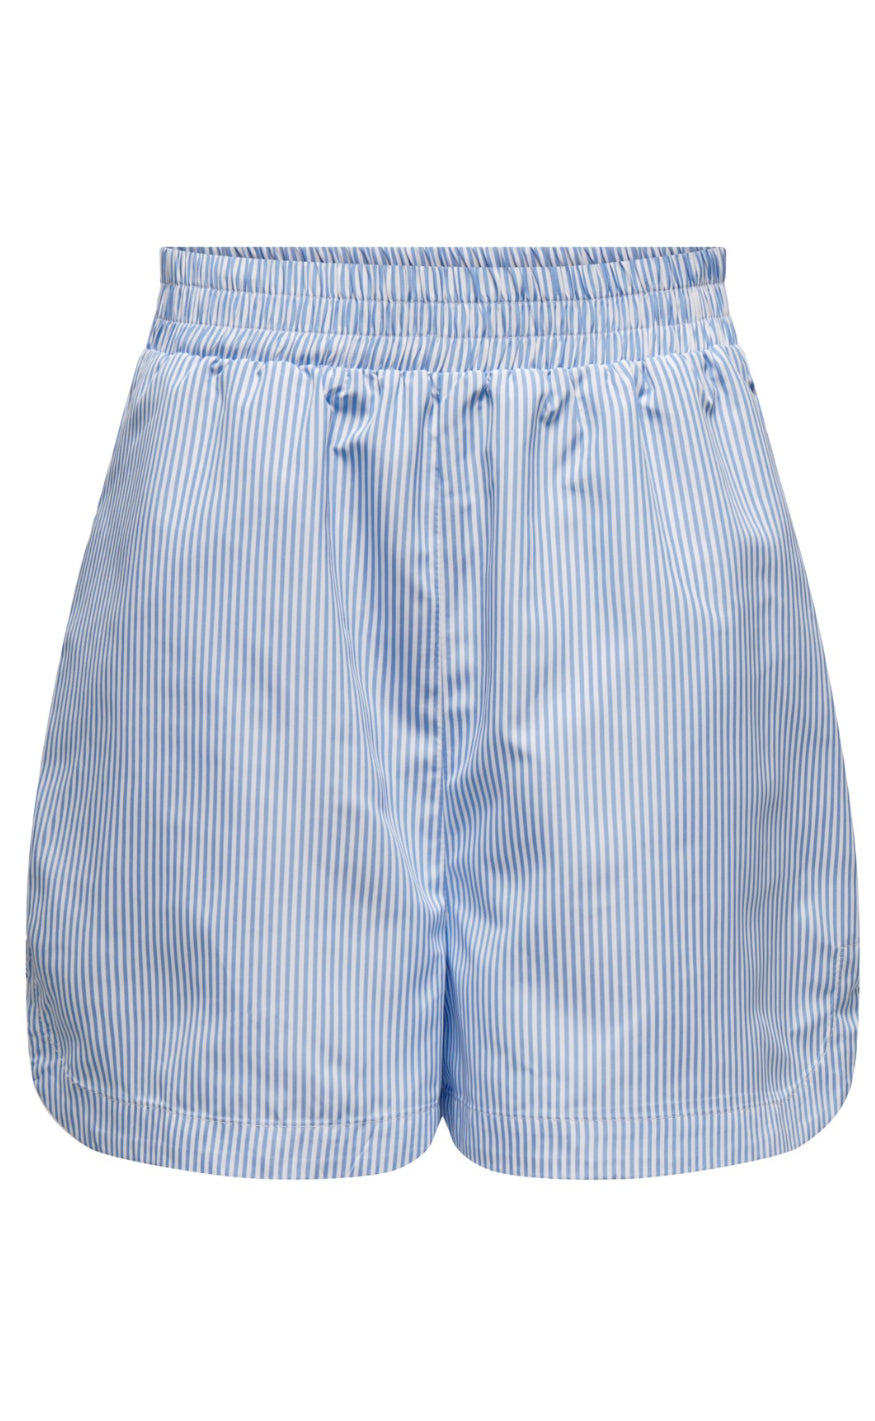 15: ONLY Shorts - Vinnie - Vista Blue